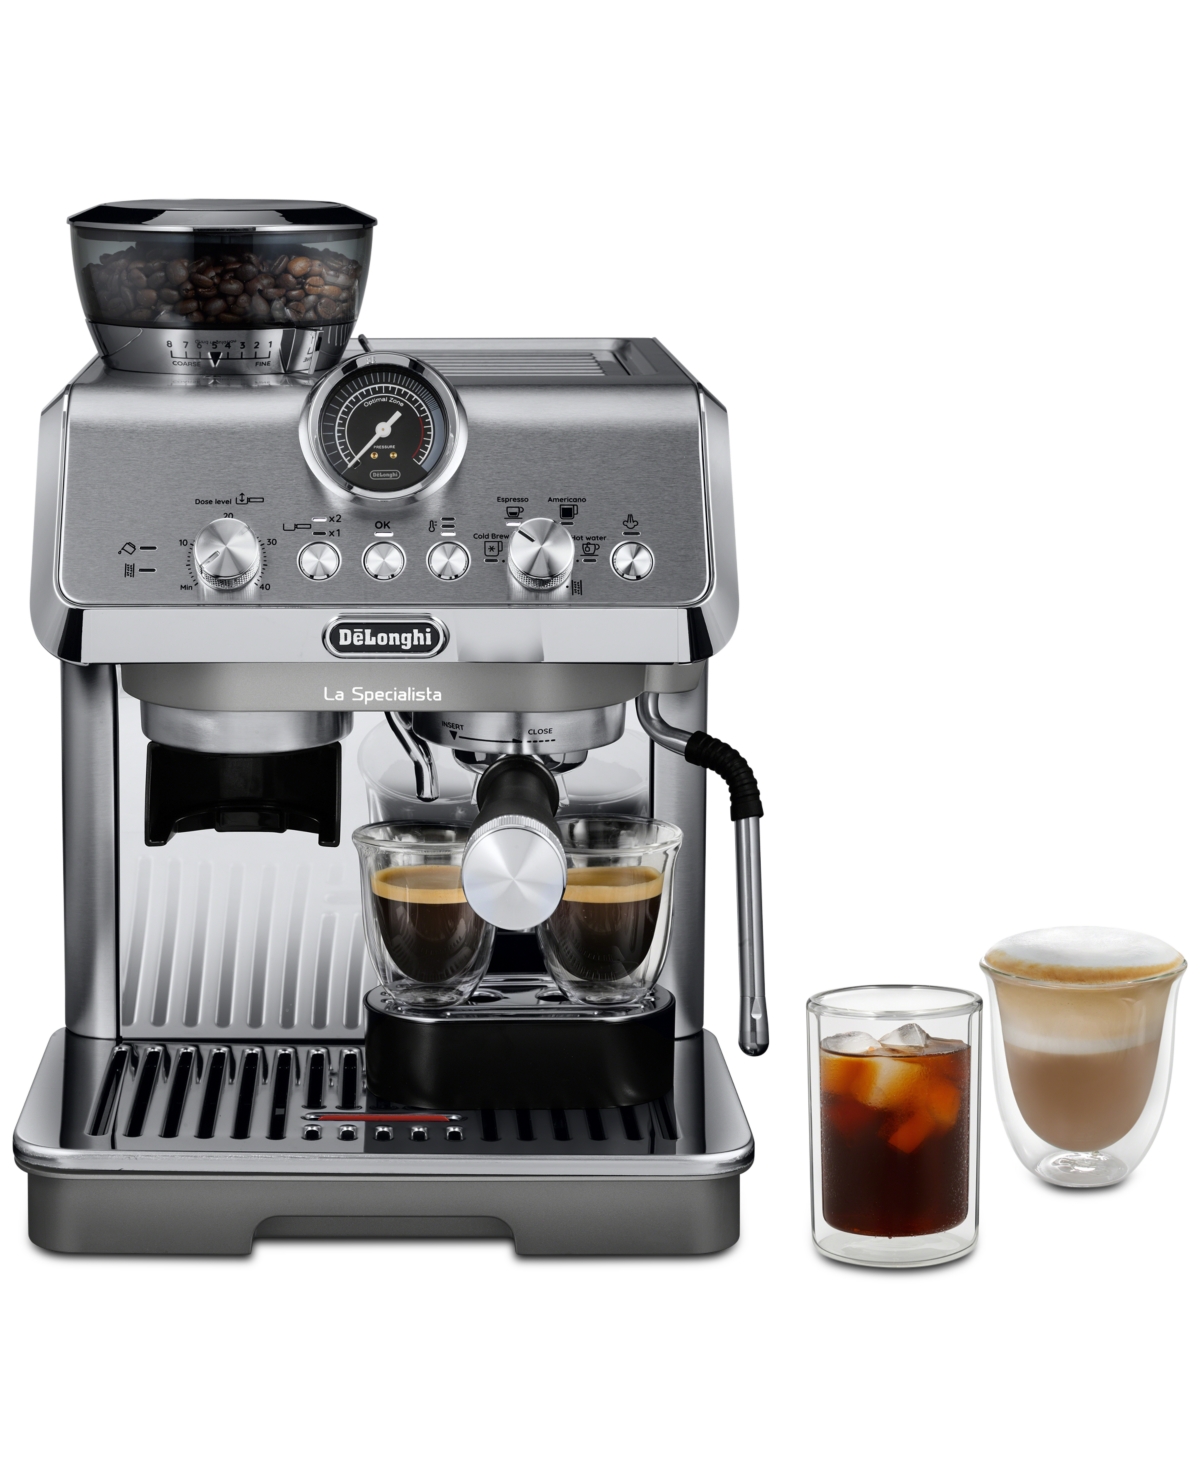 Delonghi La Specialista Arte Evo Espresso Machine With Cold Brew In Stainless Steel